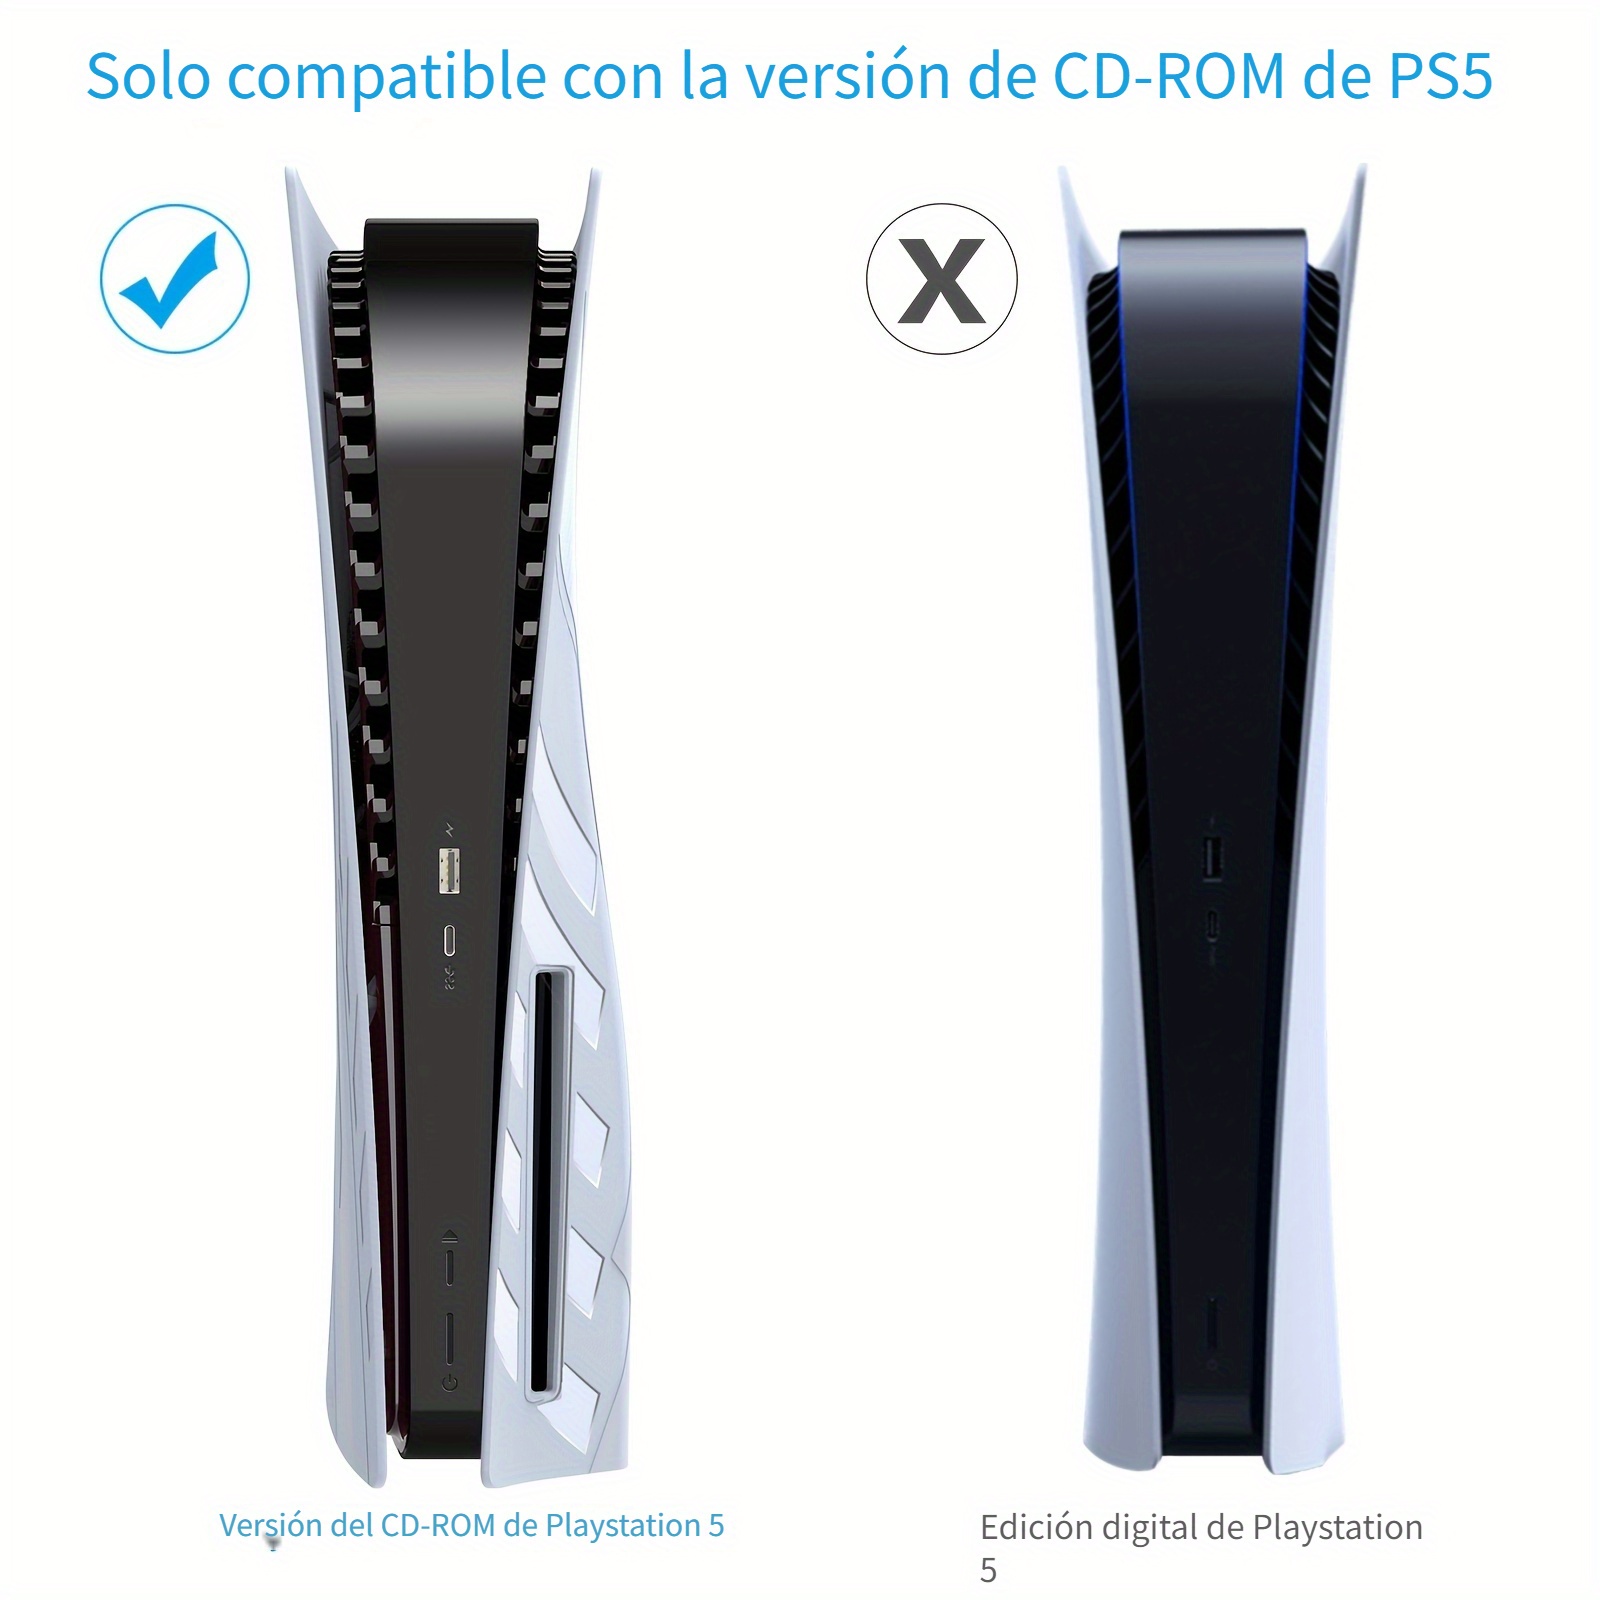 Placa facial de edición digital, paneles de carcasa para consola PS5,  Playstation 5, placa protectora de repuesto a prueba de polvo y arañazos  (azul